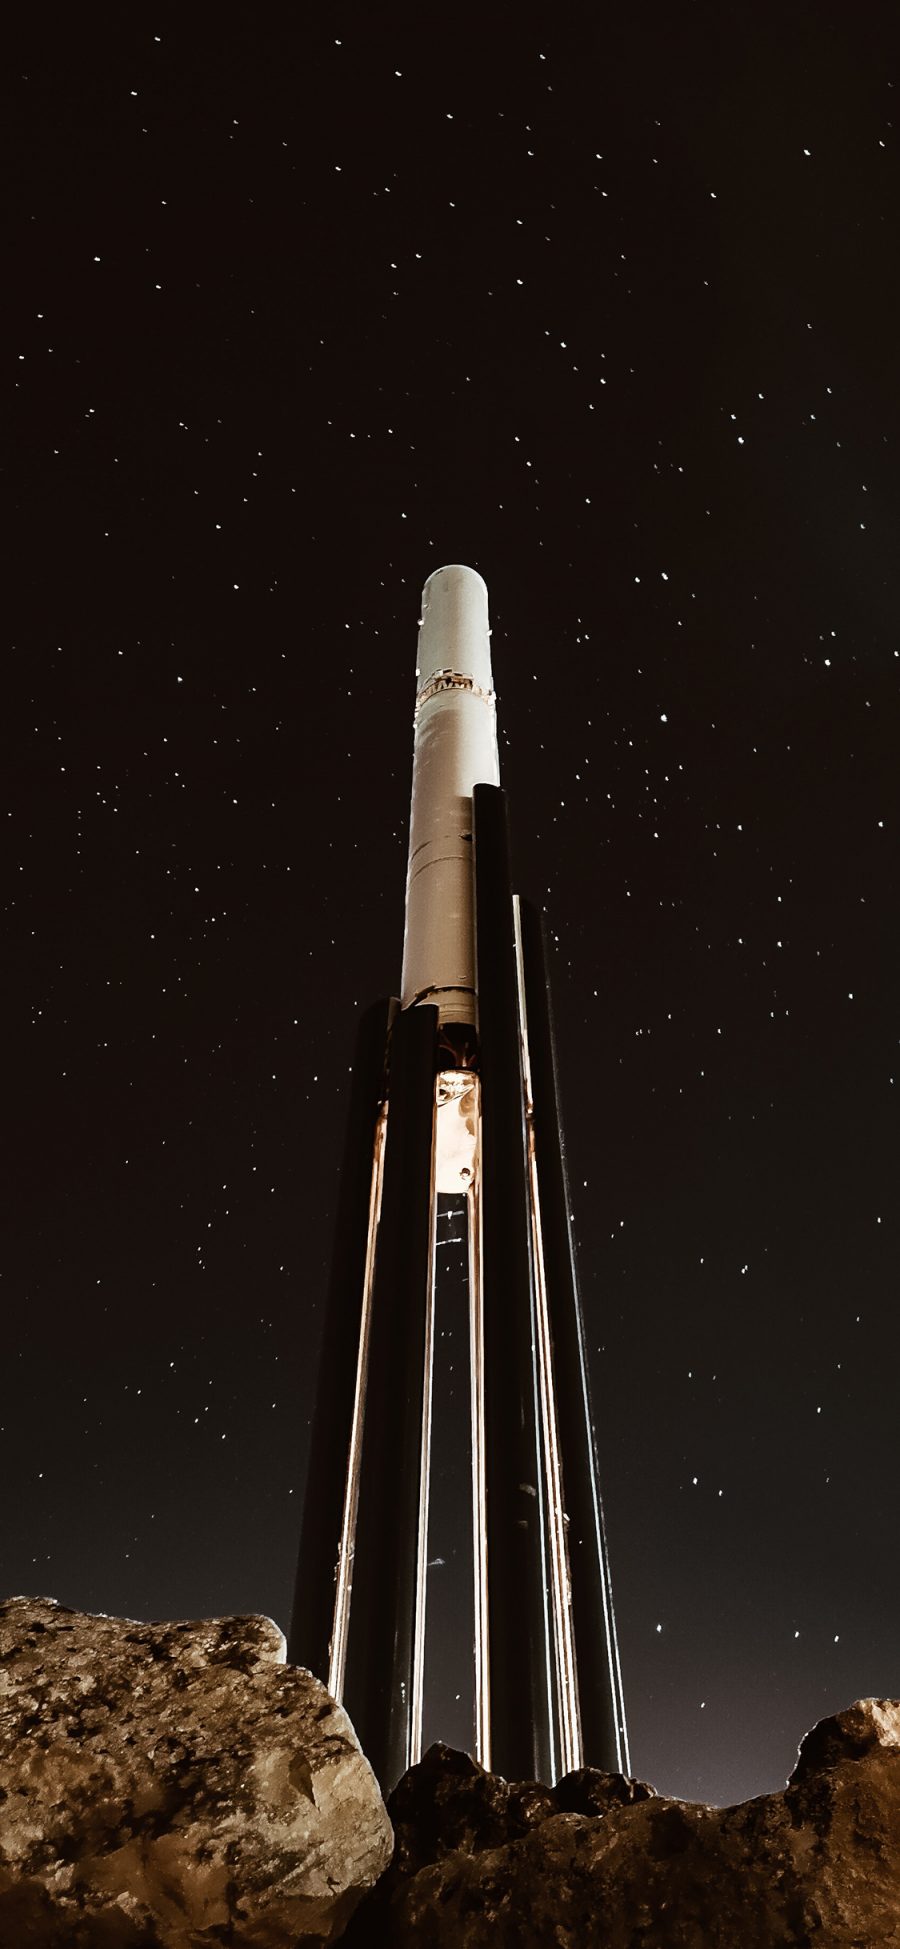 [2436×1125]夜晚 星空 火箭发射台 苹果手机壁纸图片